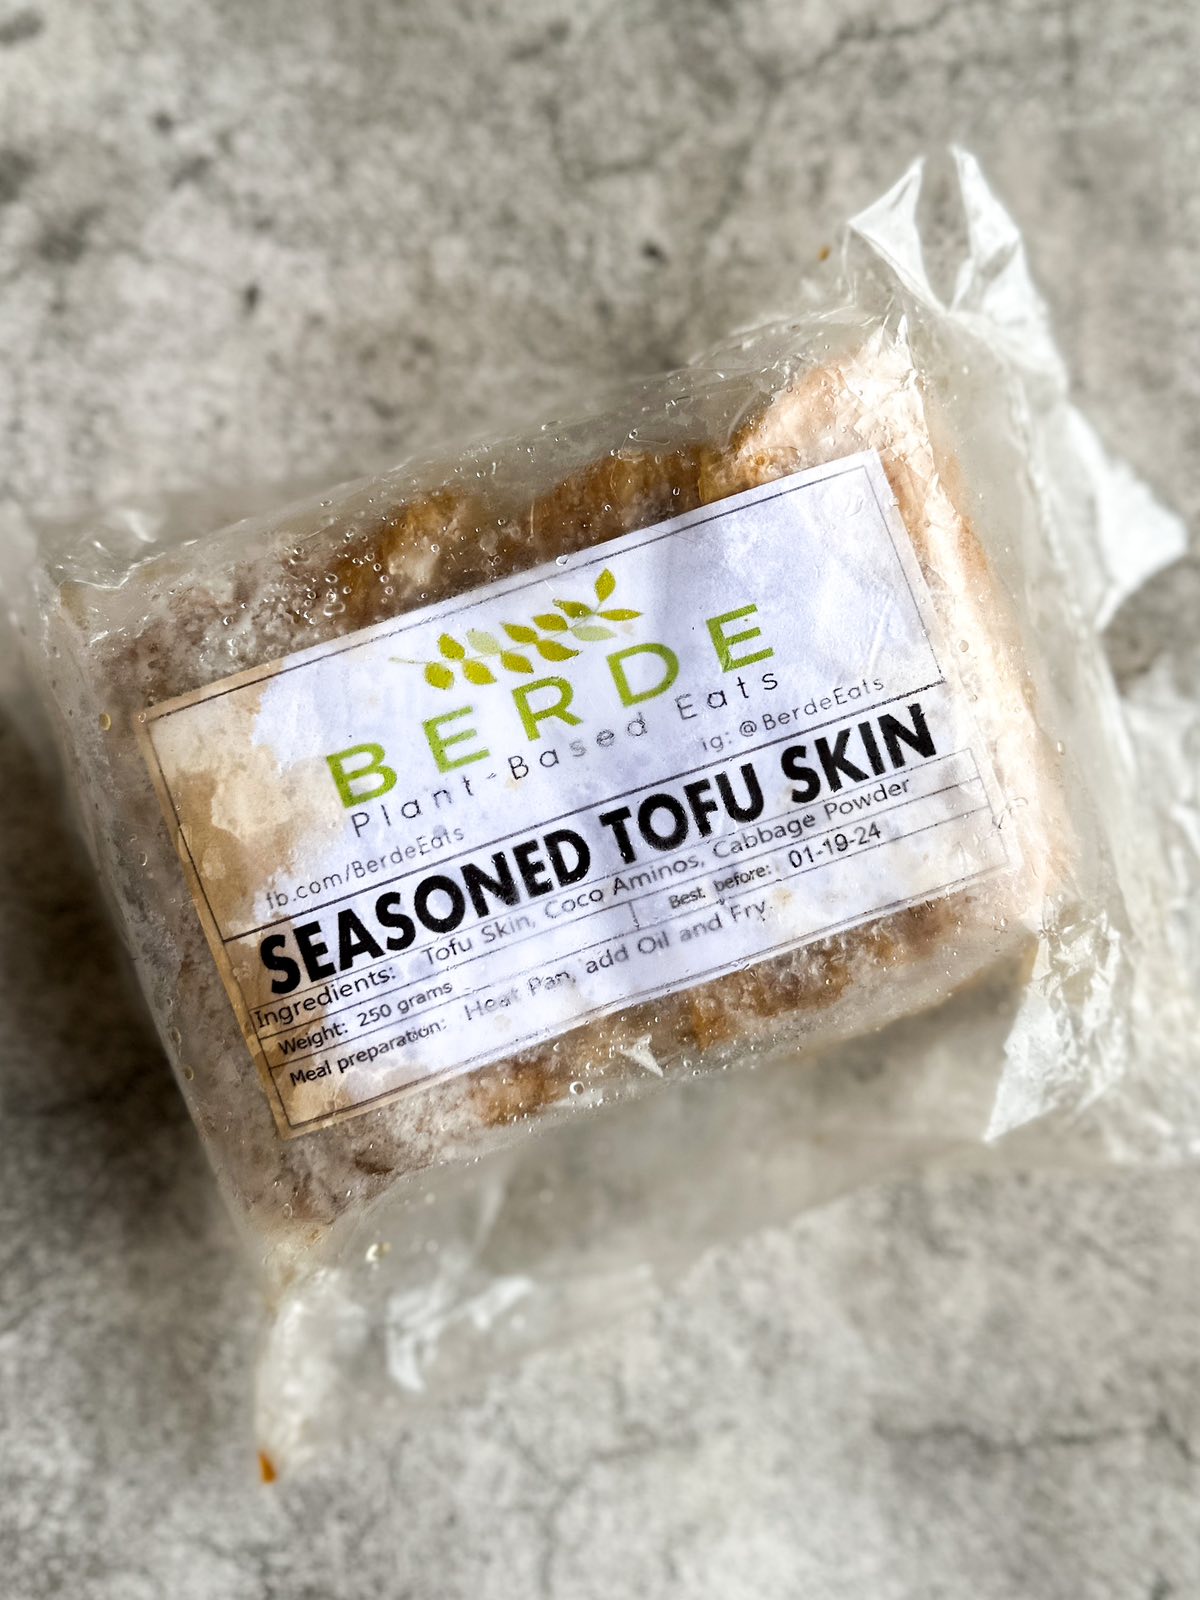 Seasoned Tofu Skin